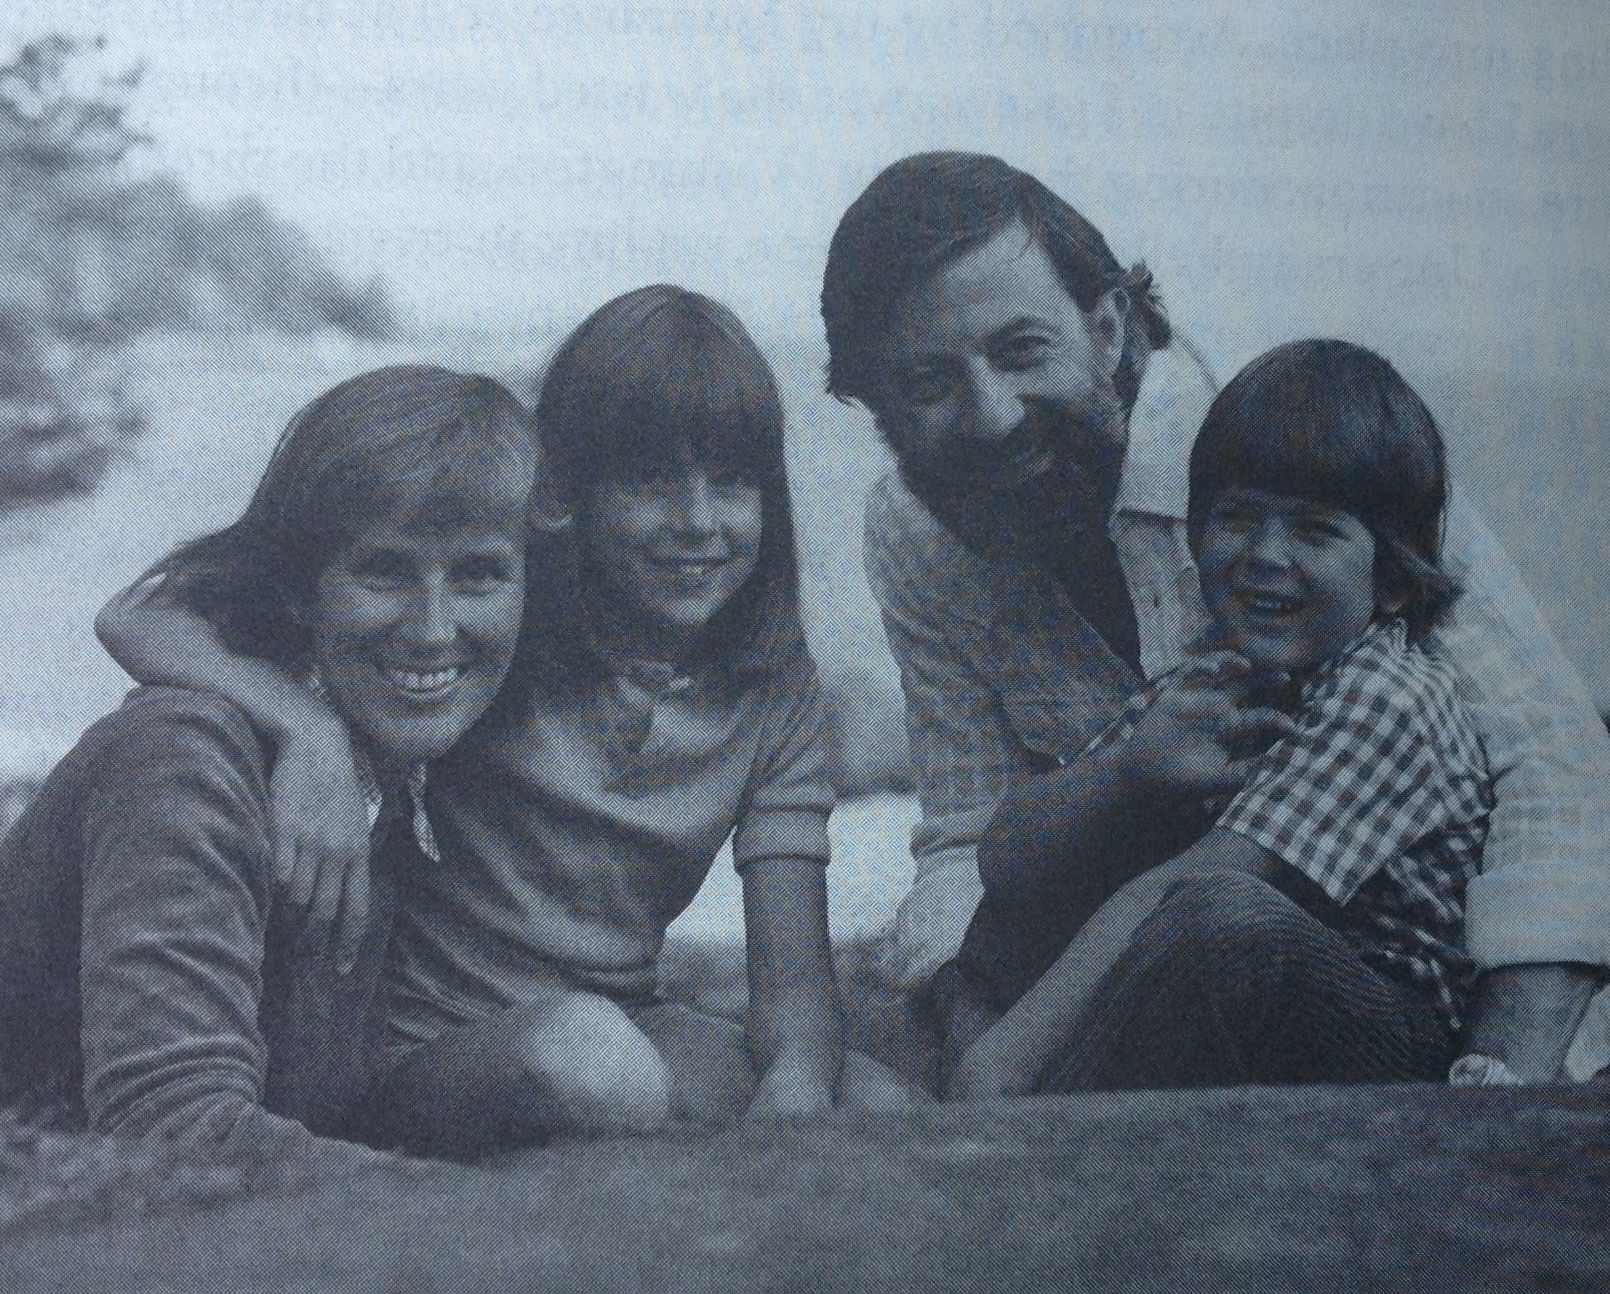 Young Katchadourian Family on outing, Stina, Nina, author Herant, Kai